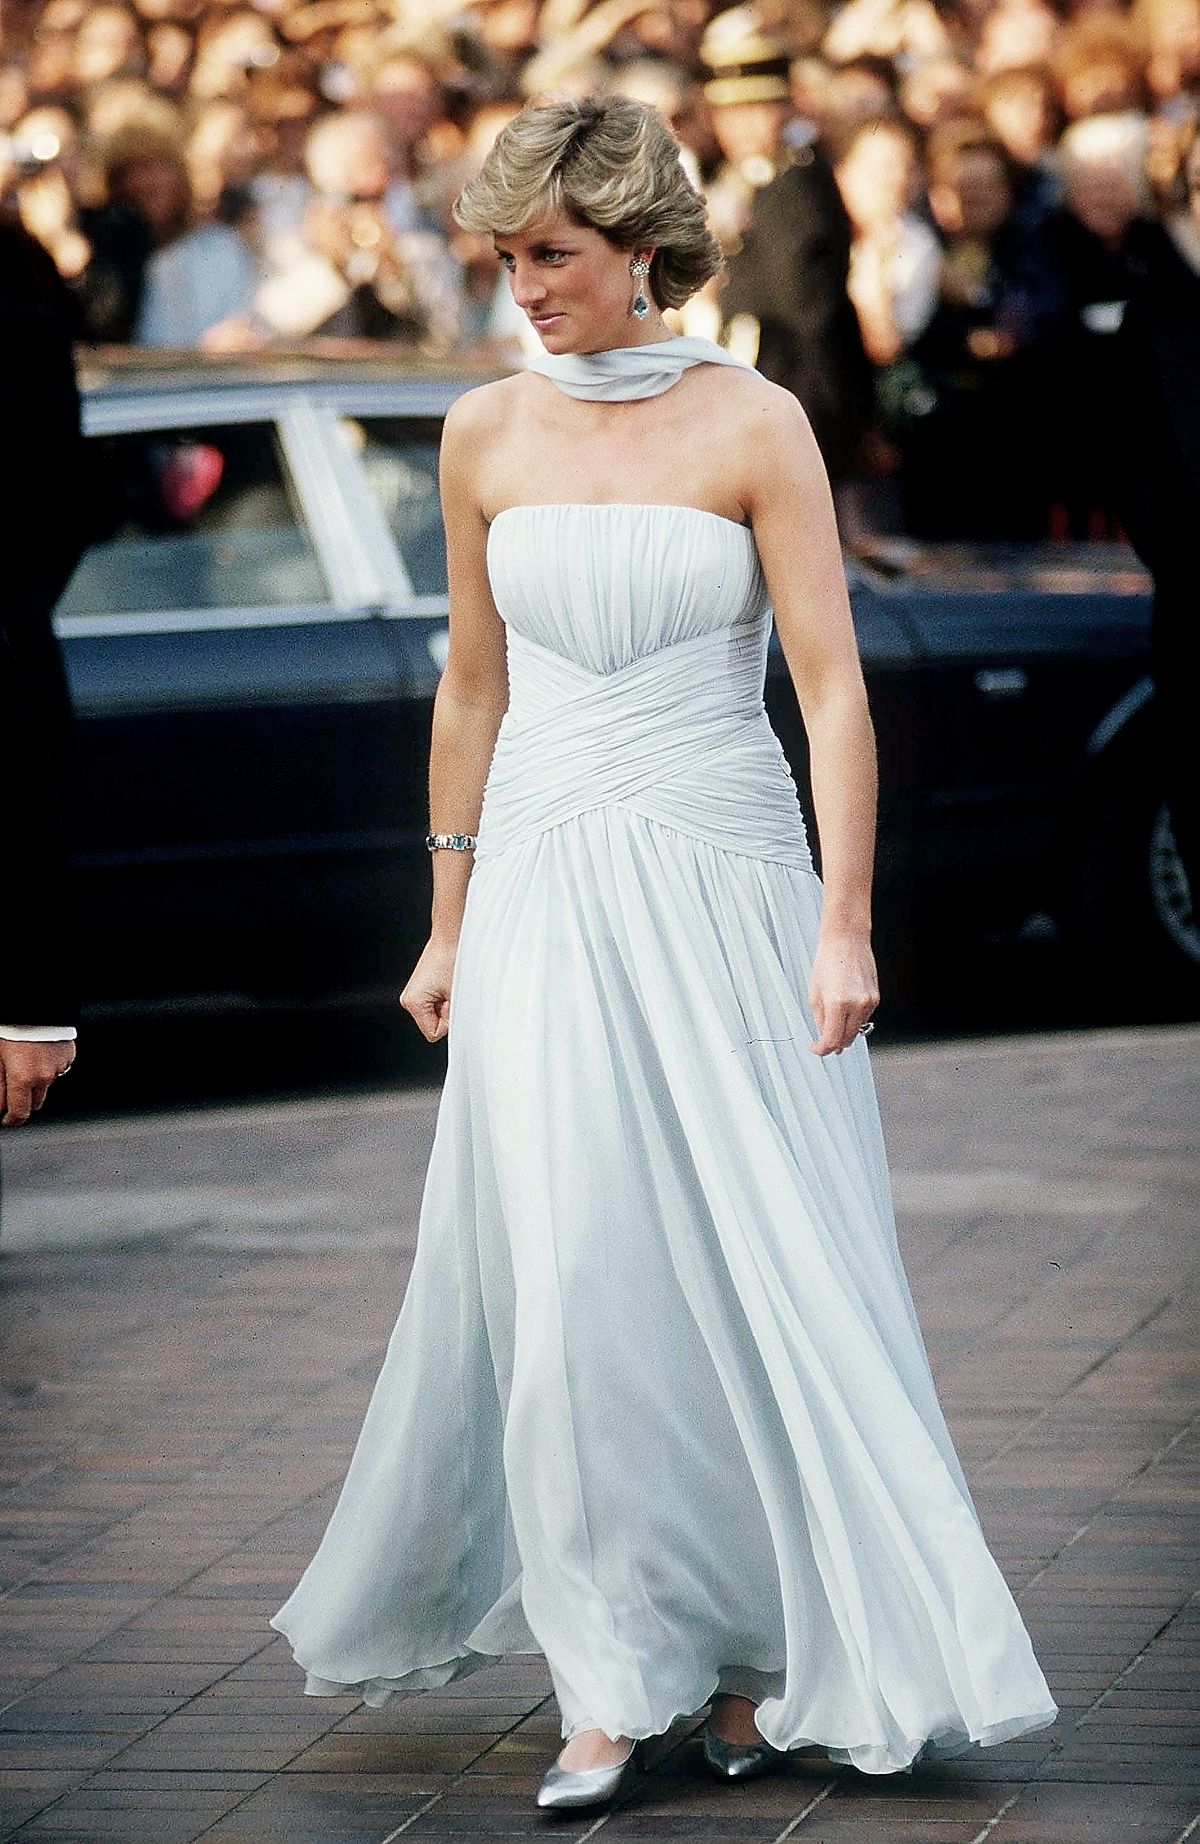 Принцесса Диана в платье Catherine Walker на международном Каннском кинофестивале, фото 2